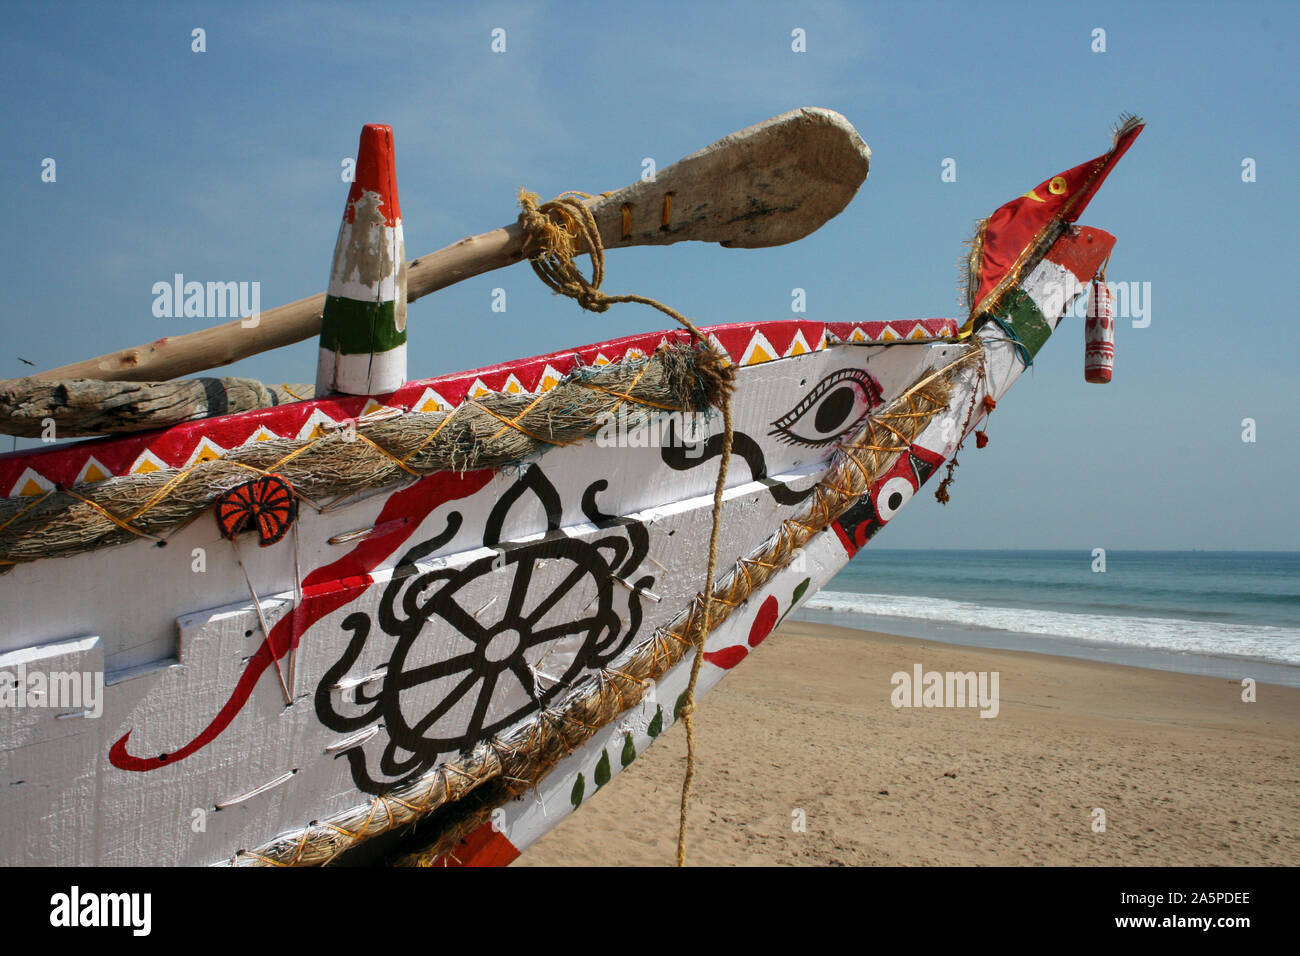 Bateau de pêche peint coloré sur la plage de Puri, Orissa, Inde Banque D'Images